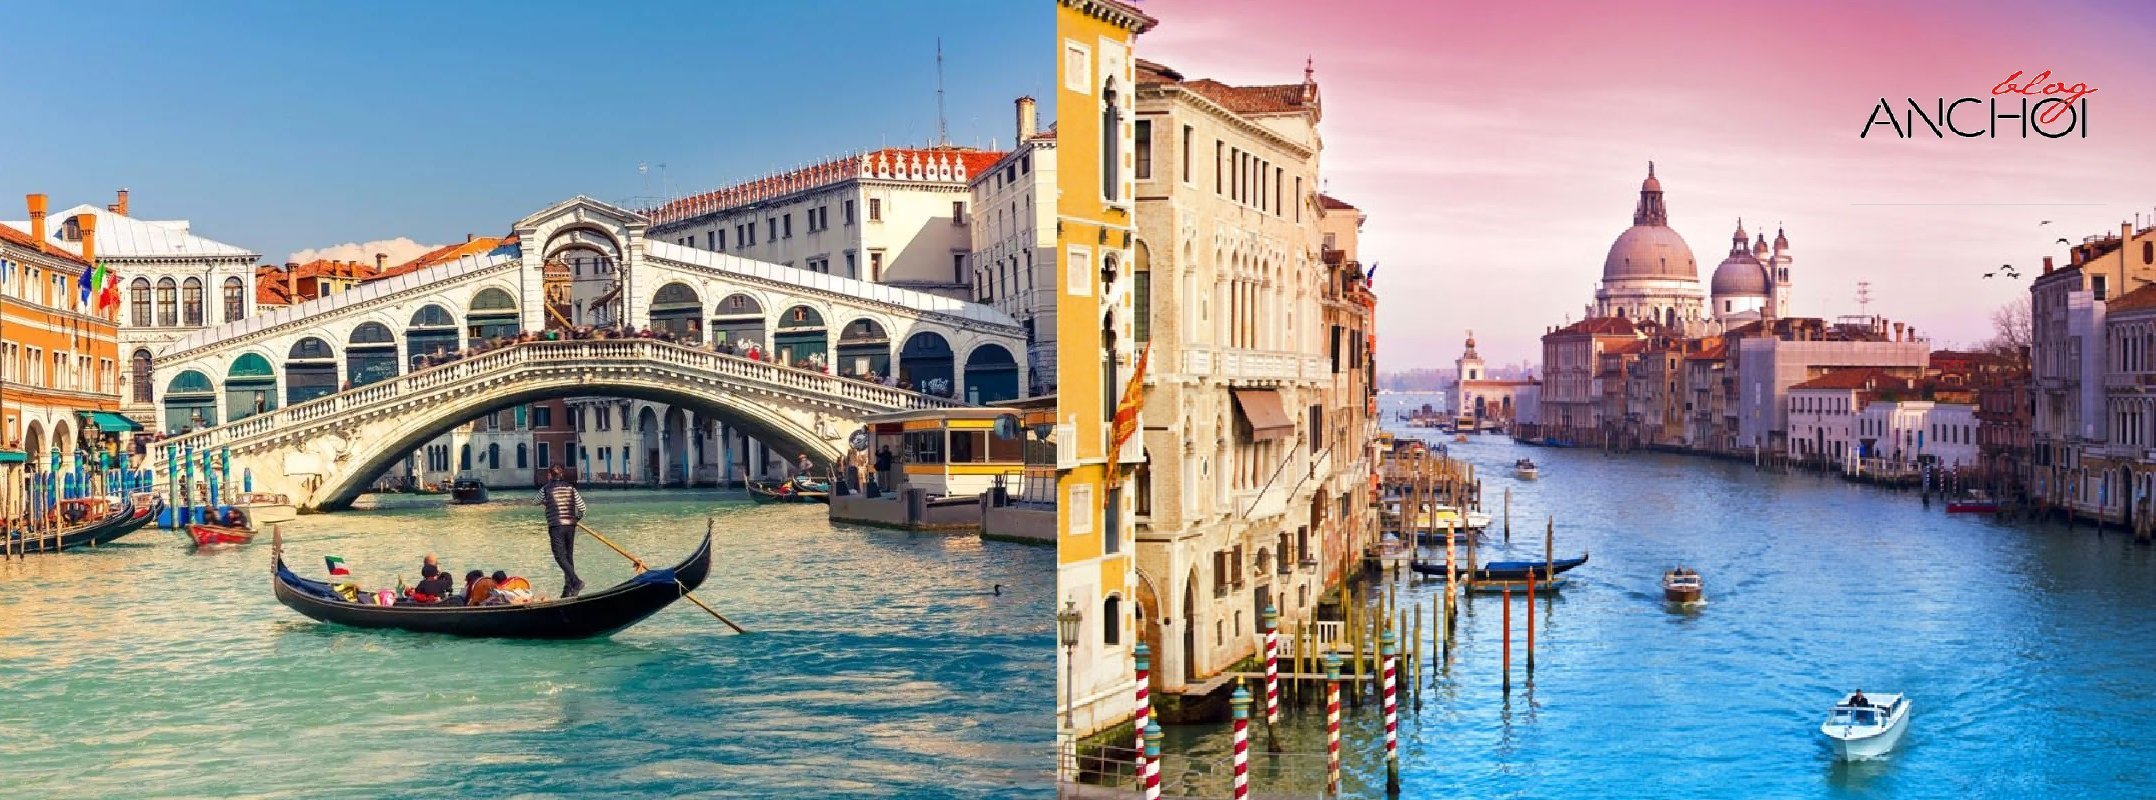 Kinh nghiệm du lịch Venice, Ý hữu ích dành cho bạn